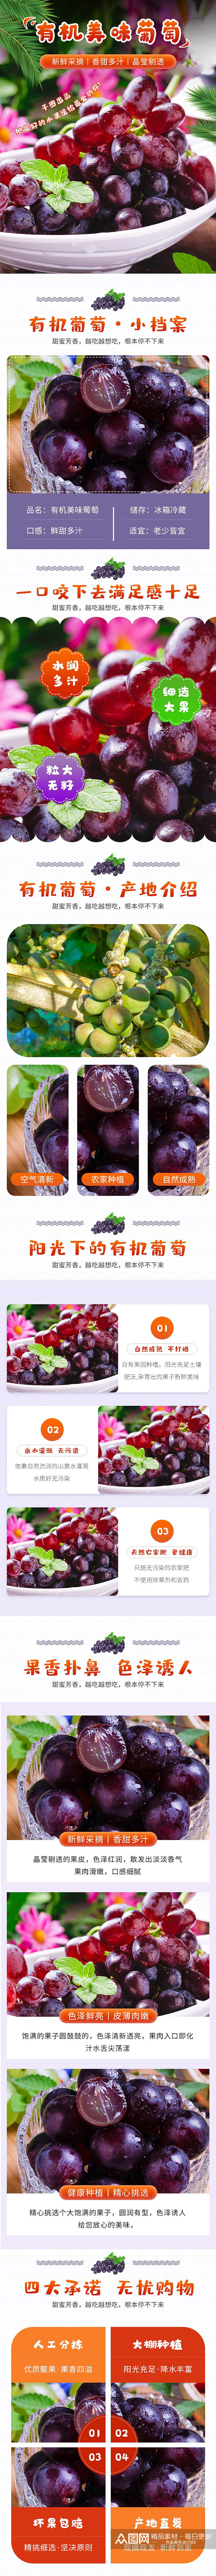 小清新有机营养美味葡萄新品水果蔬菜详情页素材